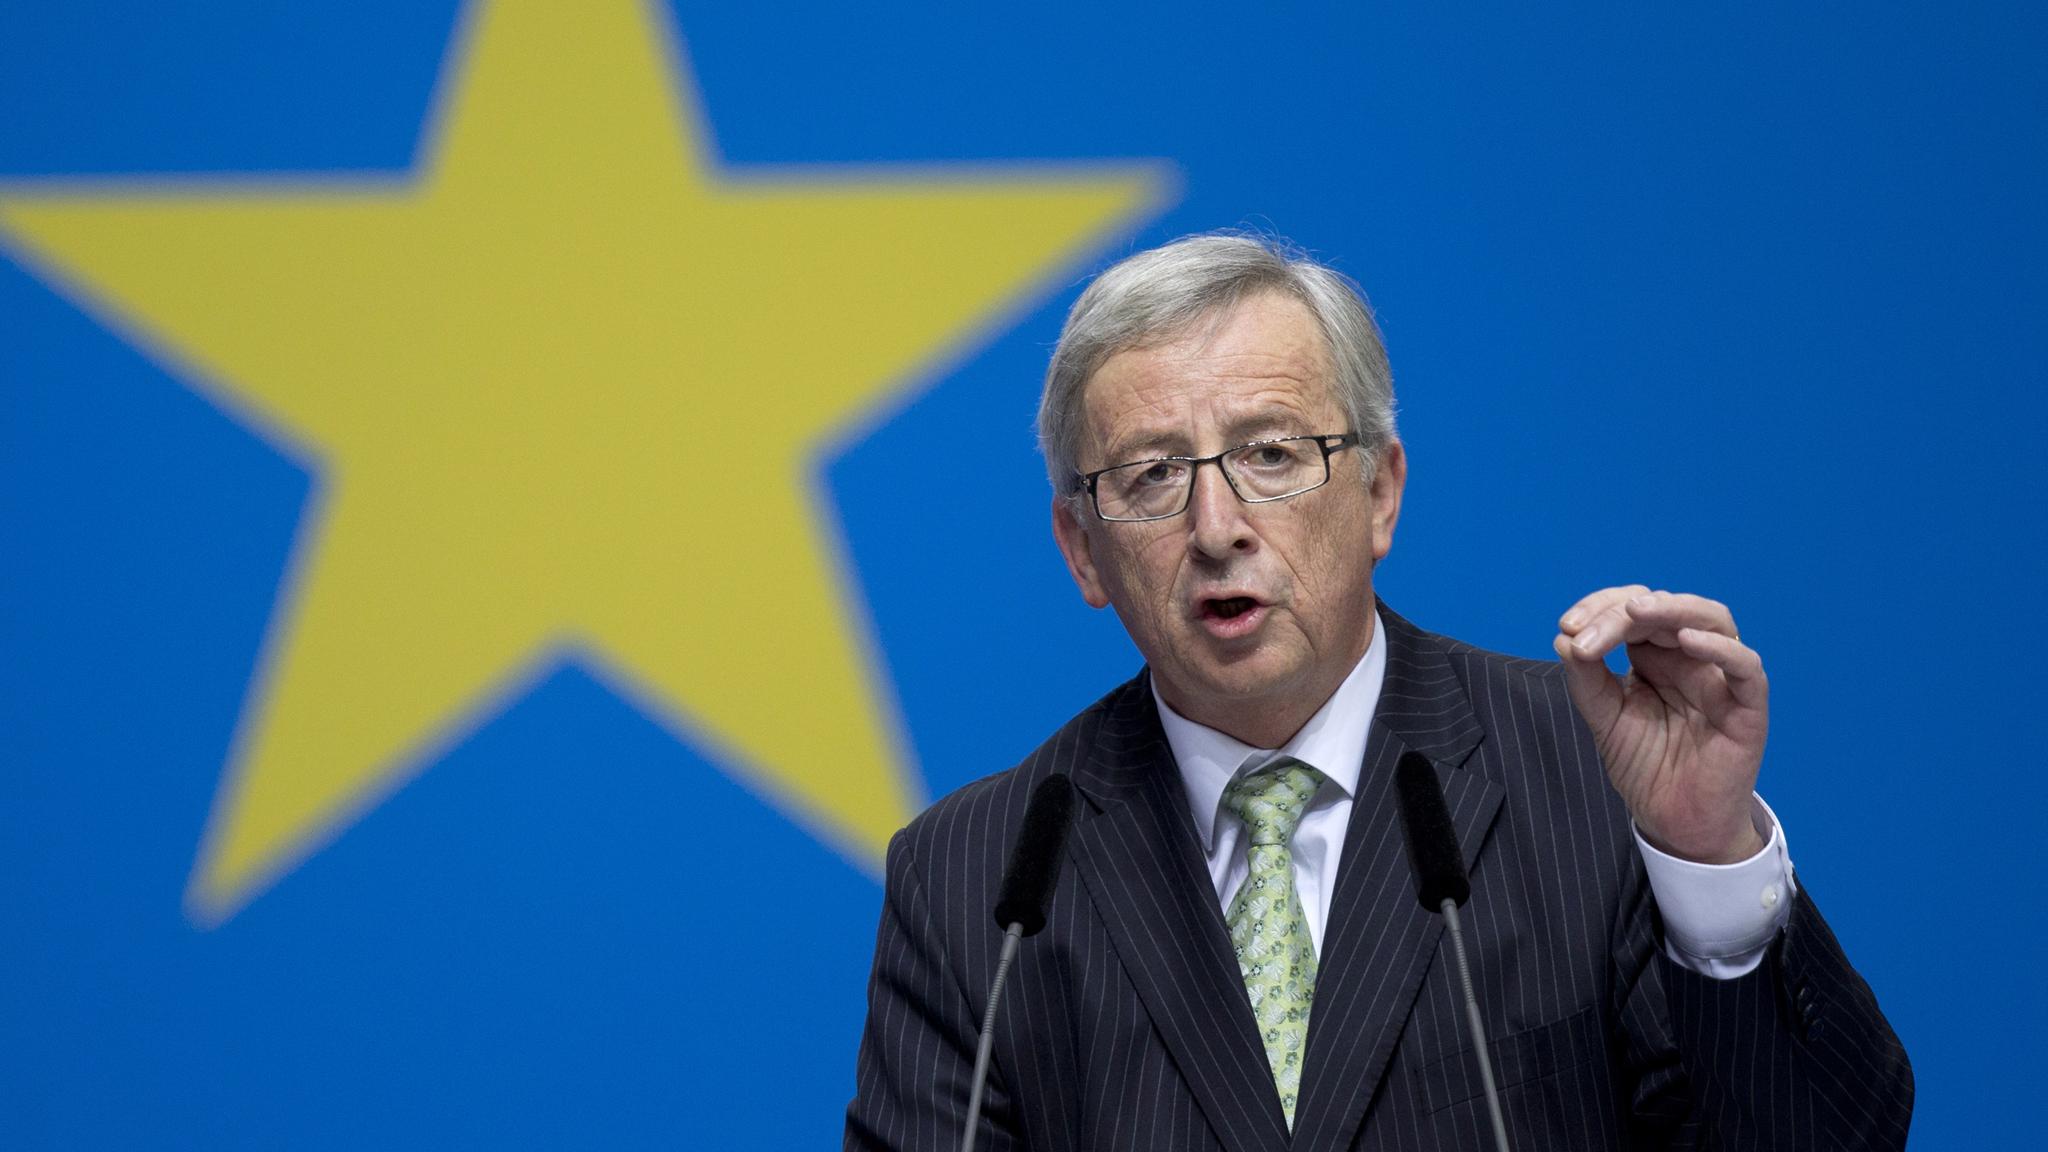 Ζ.Κ.Γιούνκερ: «Η Ελλάδα έπρεπε να παραμείνει στην Ευρωζώνη κατά τρόπο αδιαμφισβήτητο και μη αναστρέψιμο»